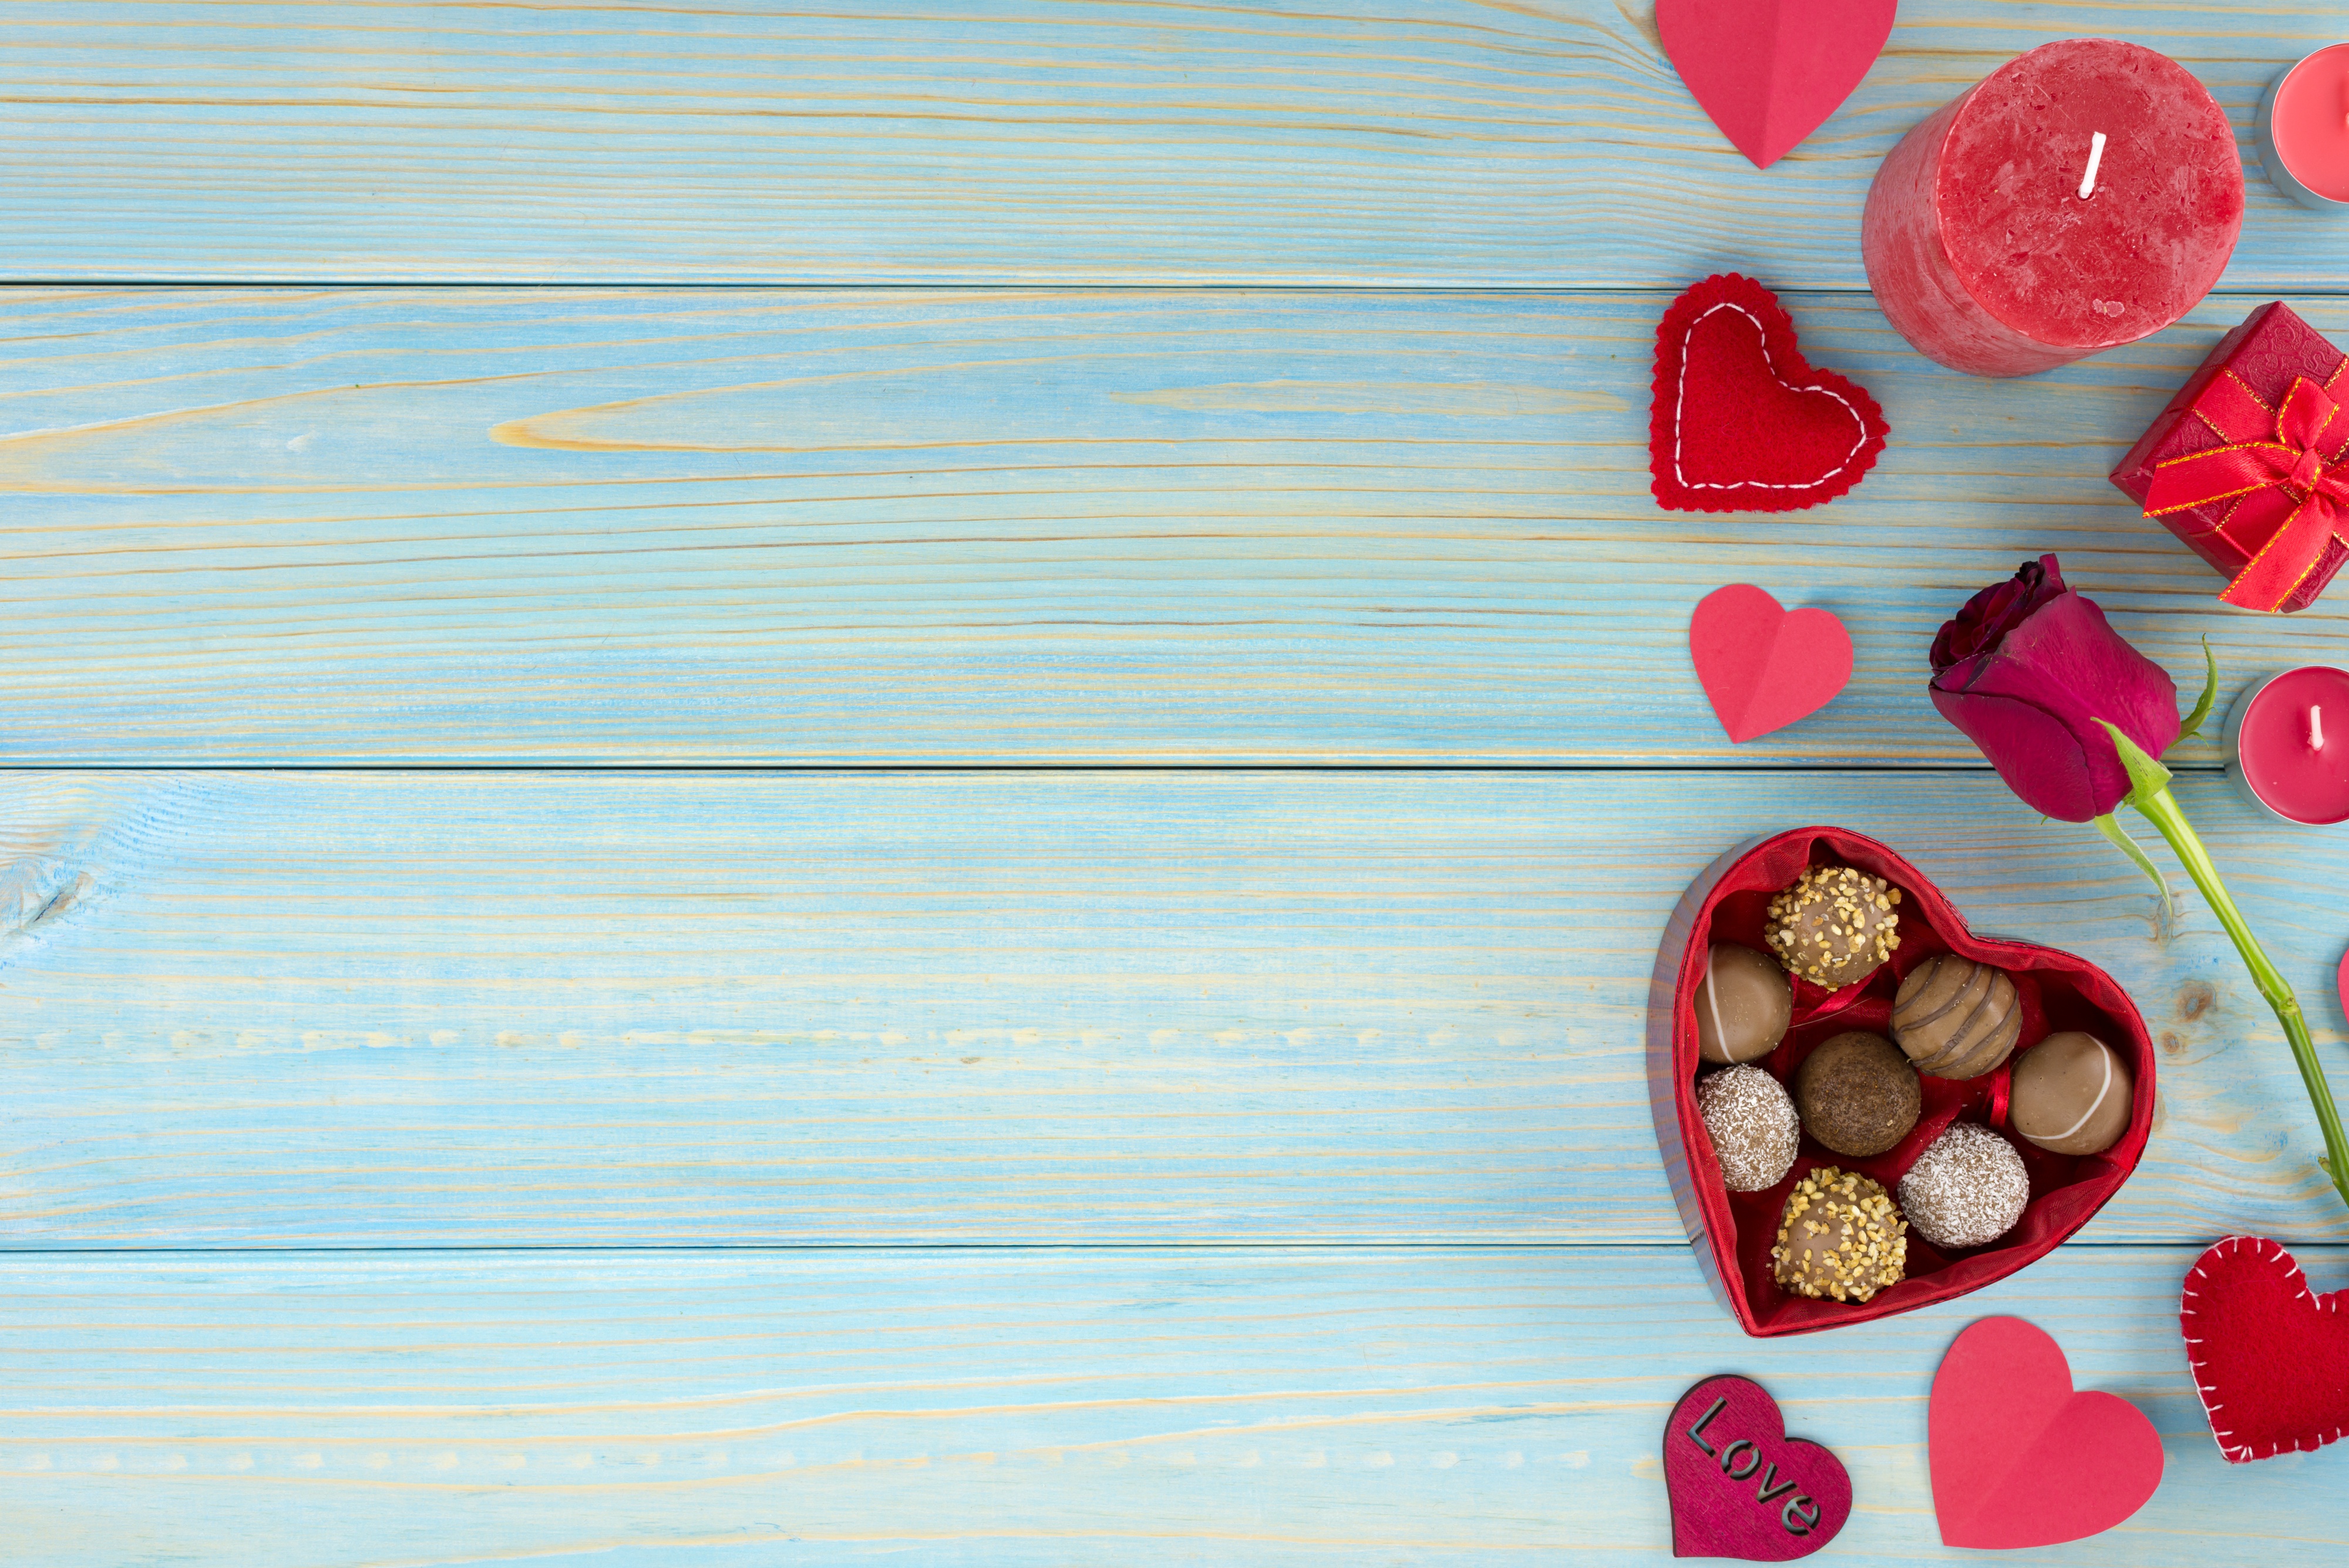 Скачать обои бесплатно Шоколад, Роза, Сердце, Подарки, День Святого Валентина, Праздничные, Романтический картинка на рабочий стол ПК